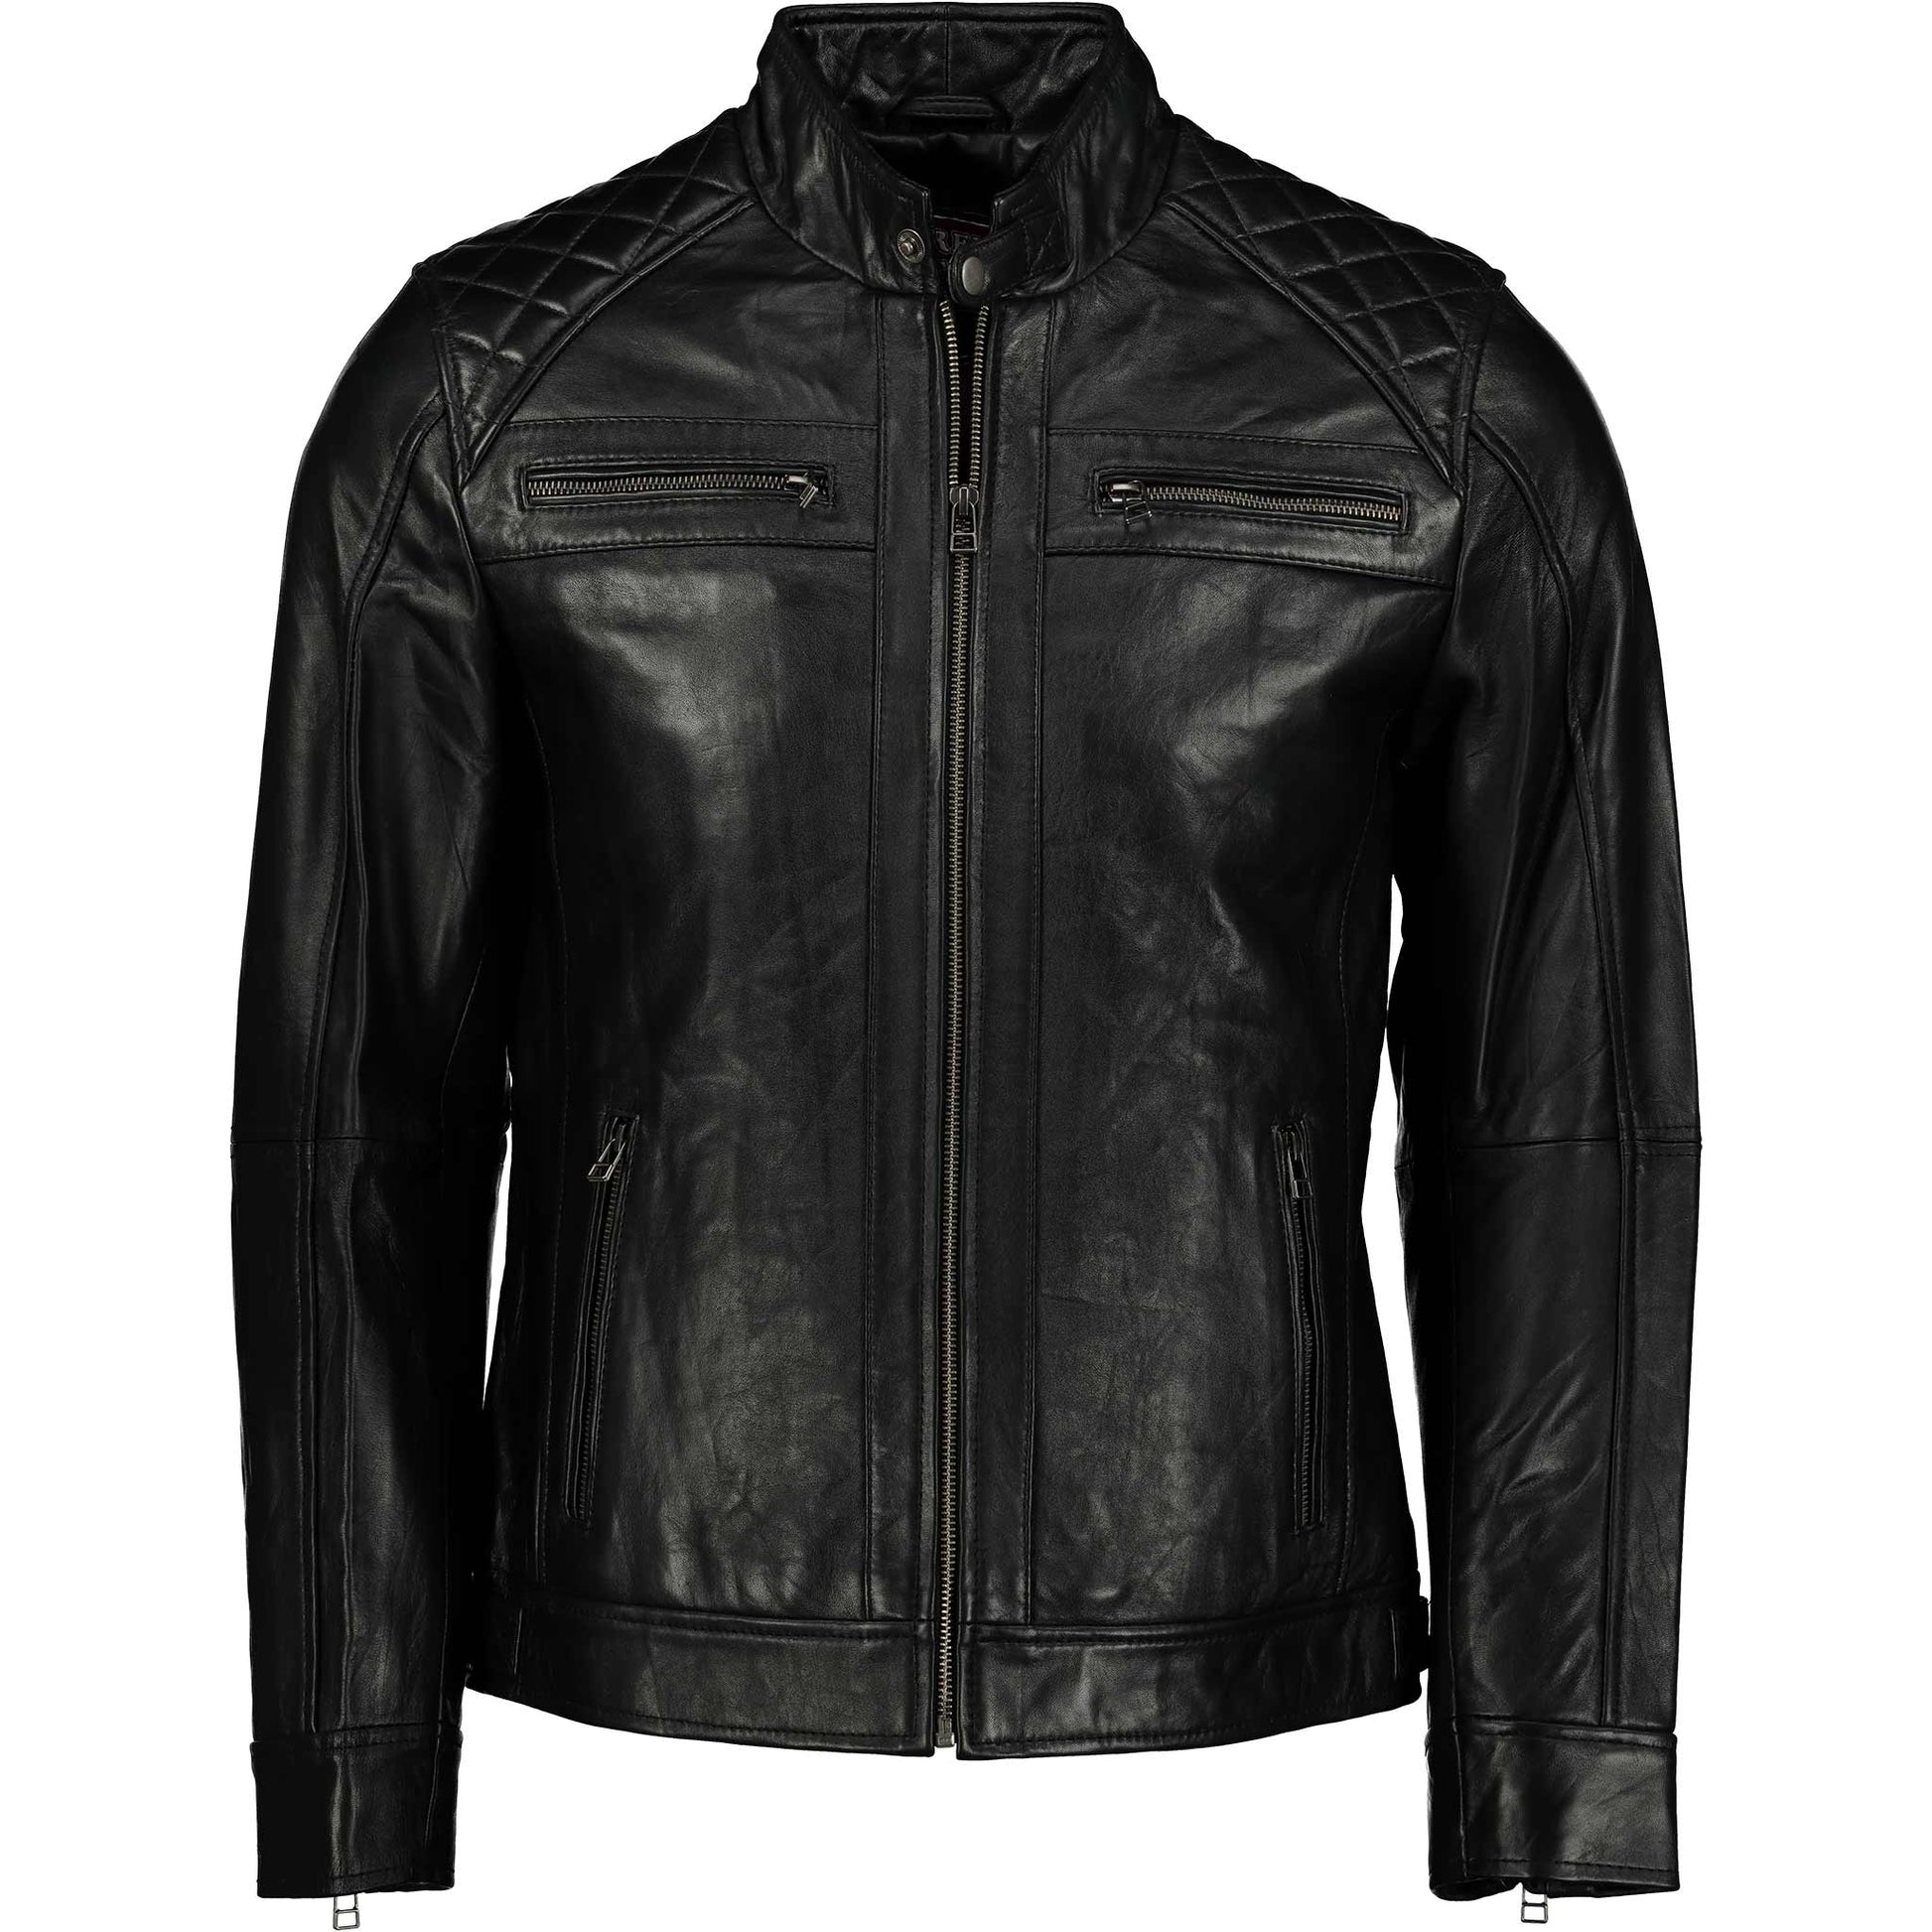 Men's Black Elite Slim Fit leather Jacket (Black)- Supreme Leather Supreme Leather